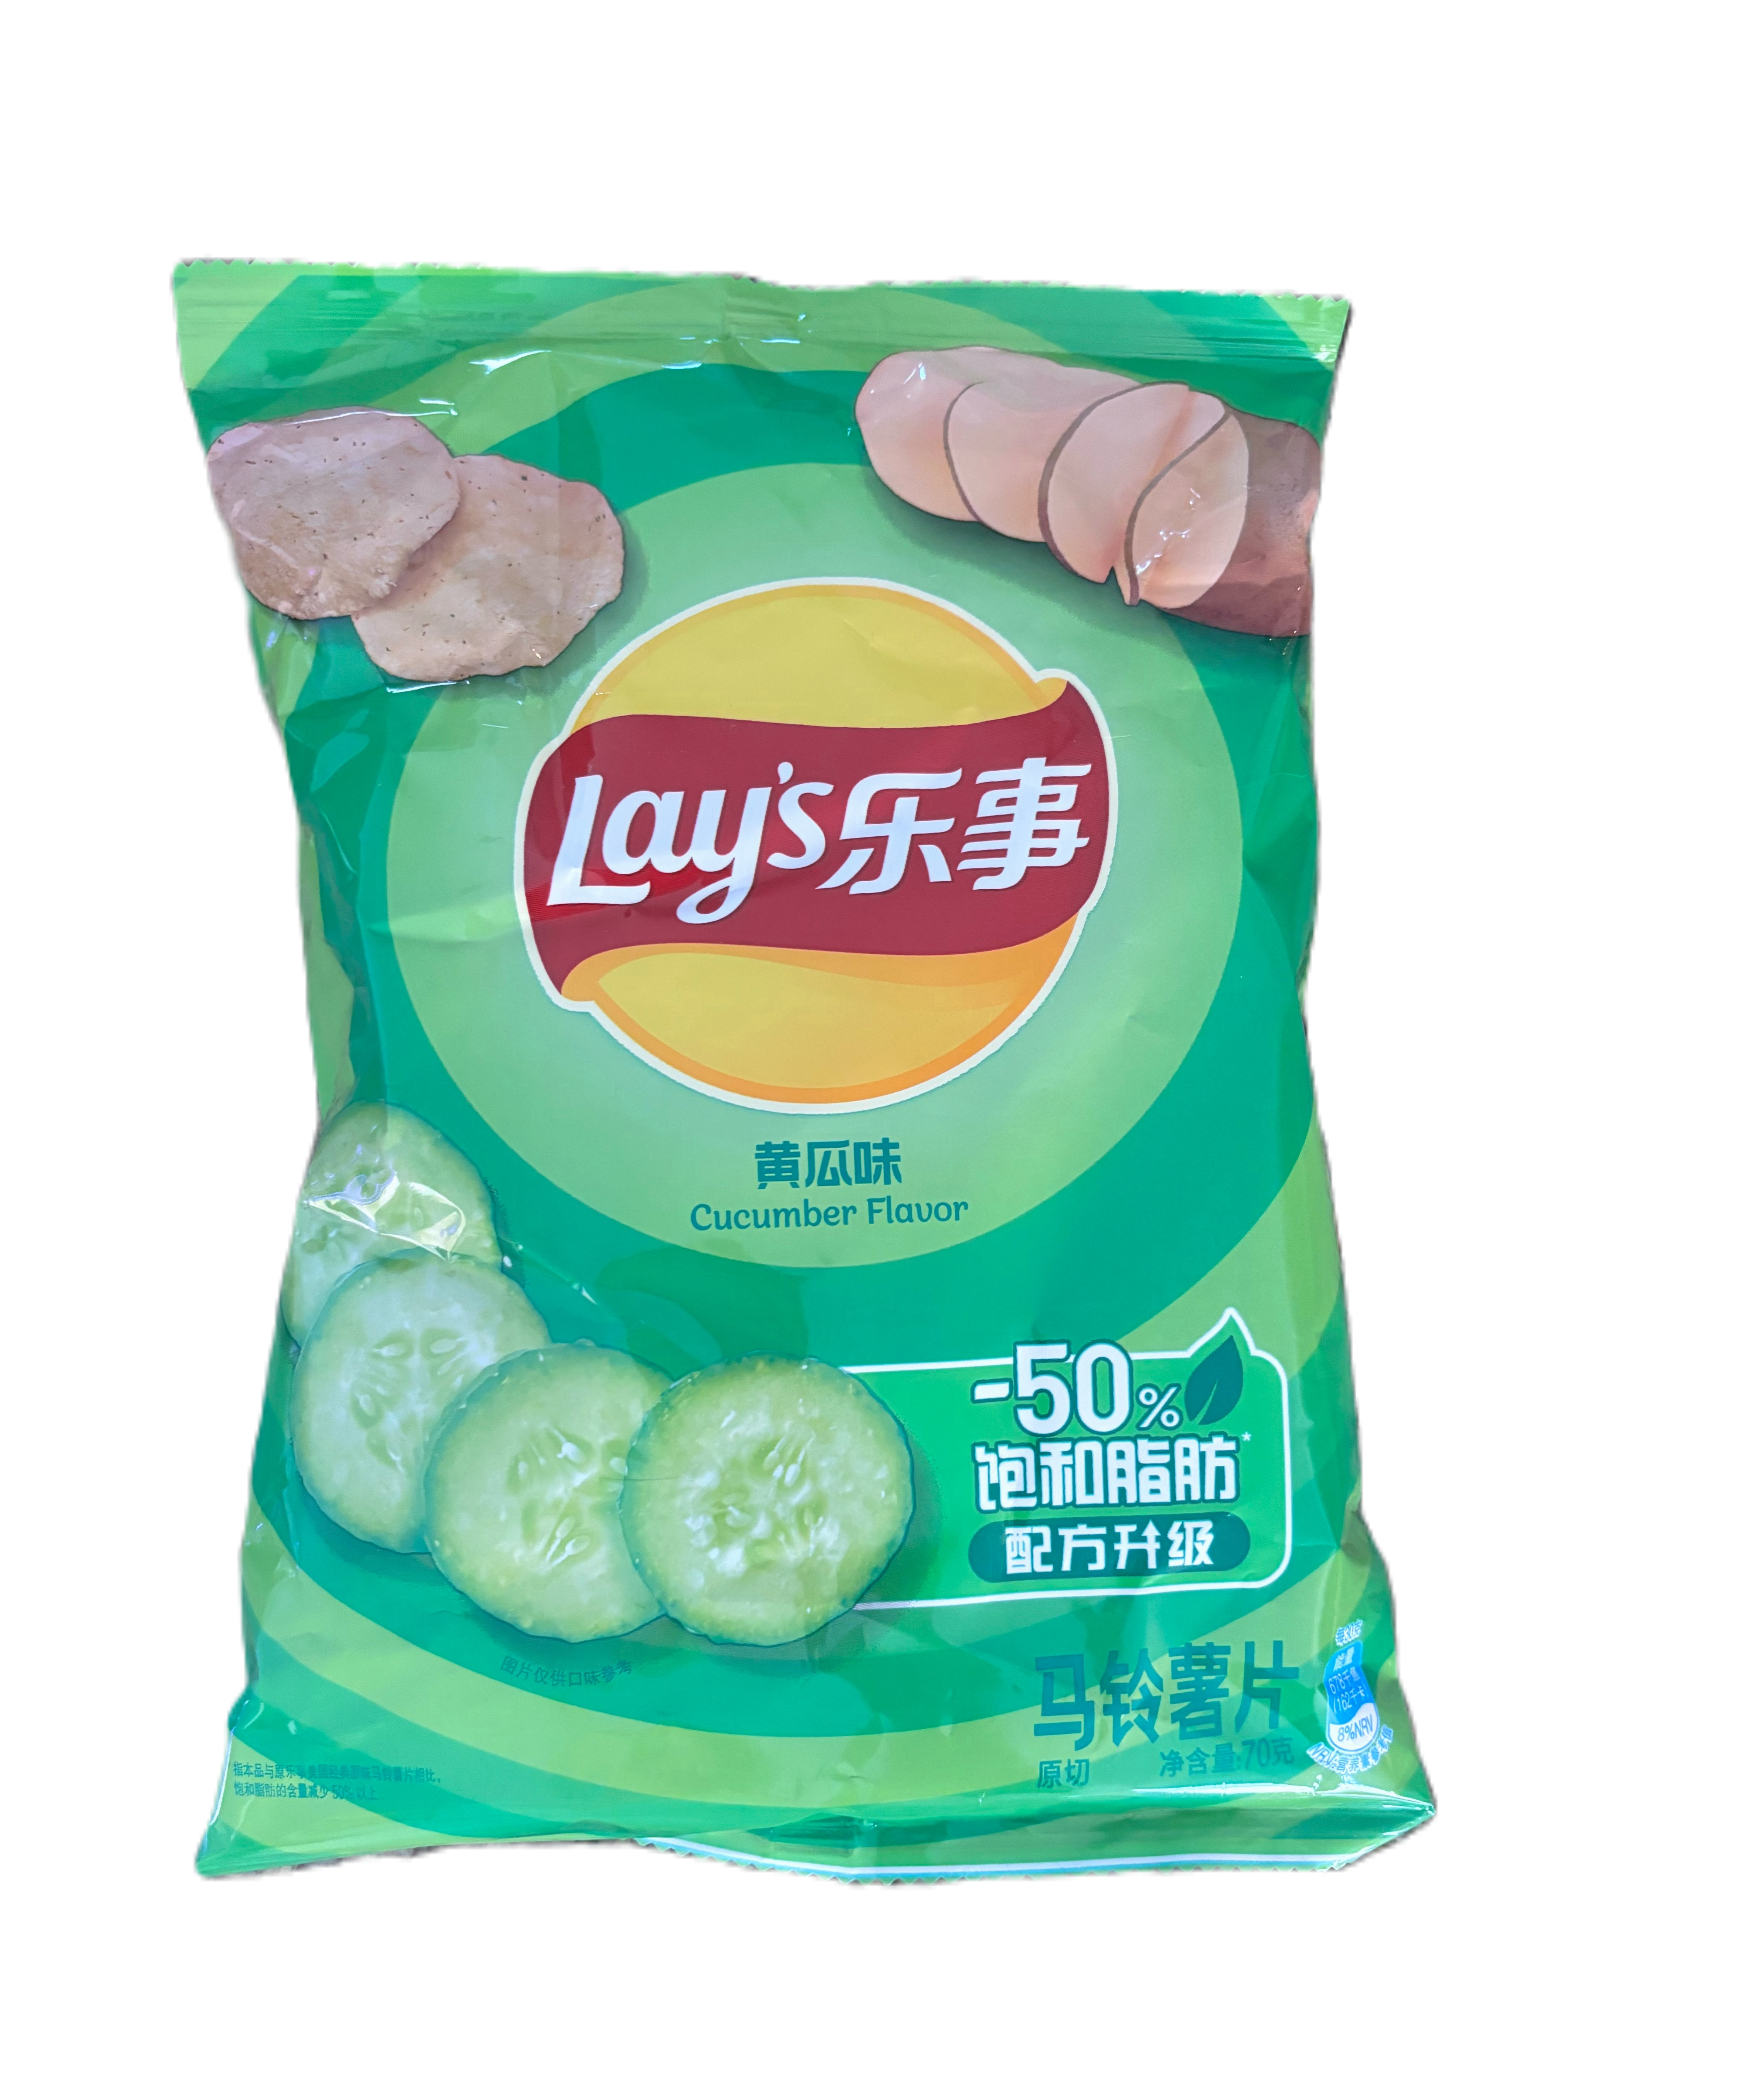 Lays Cucumber Flavor